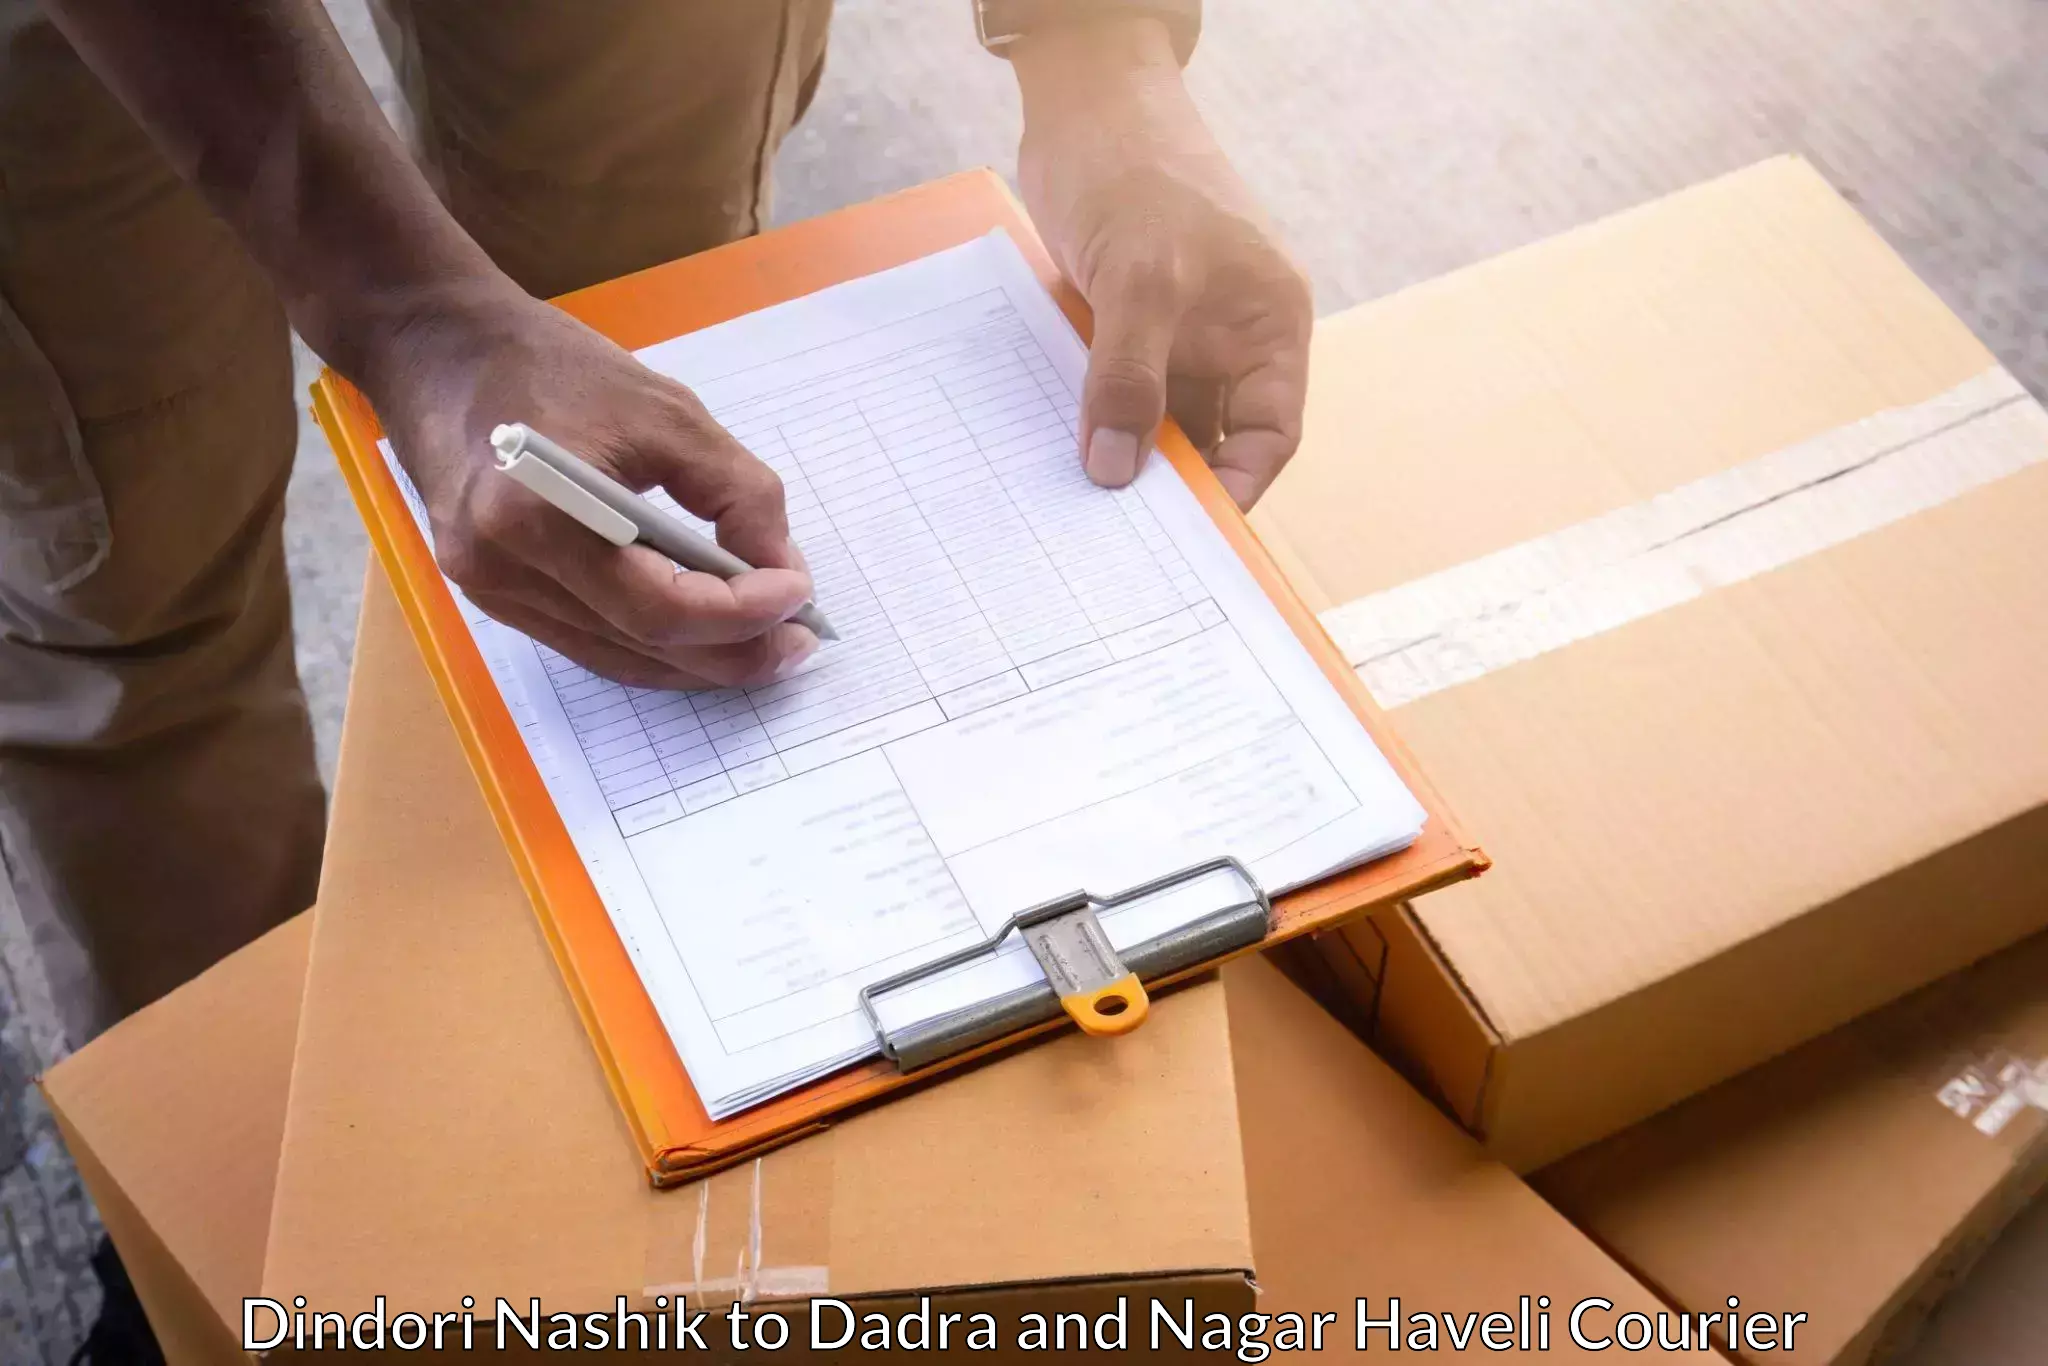 Flexible courier rates in Dindori Nashik to Silvassa